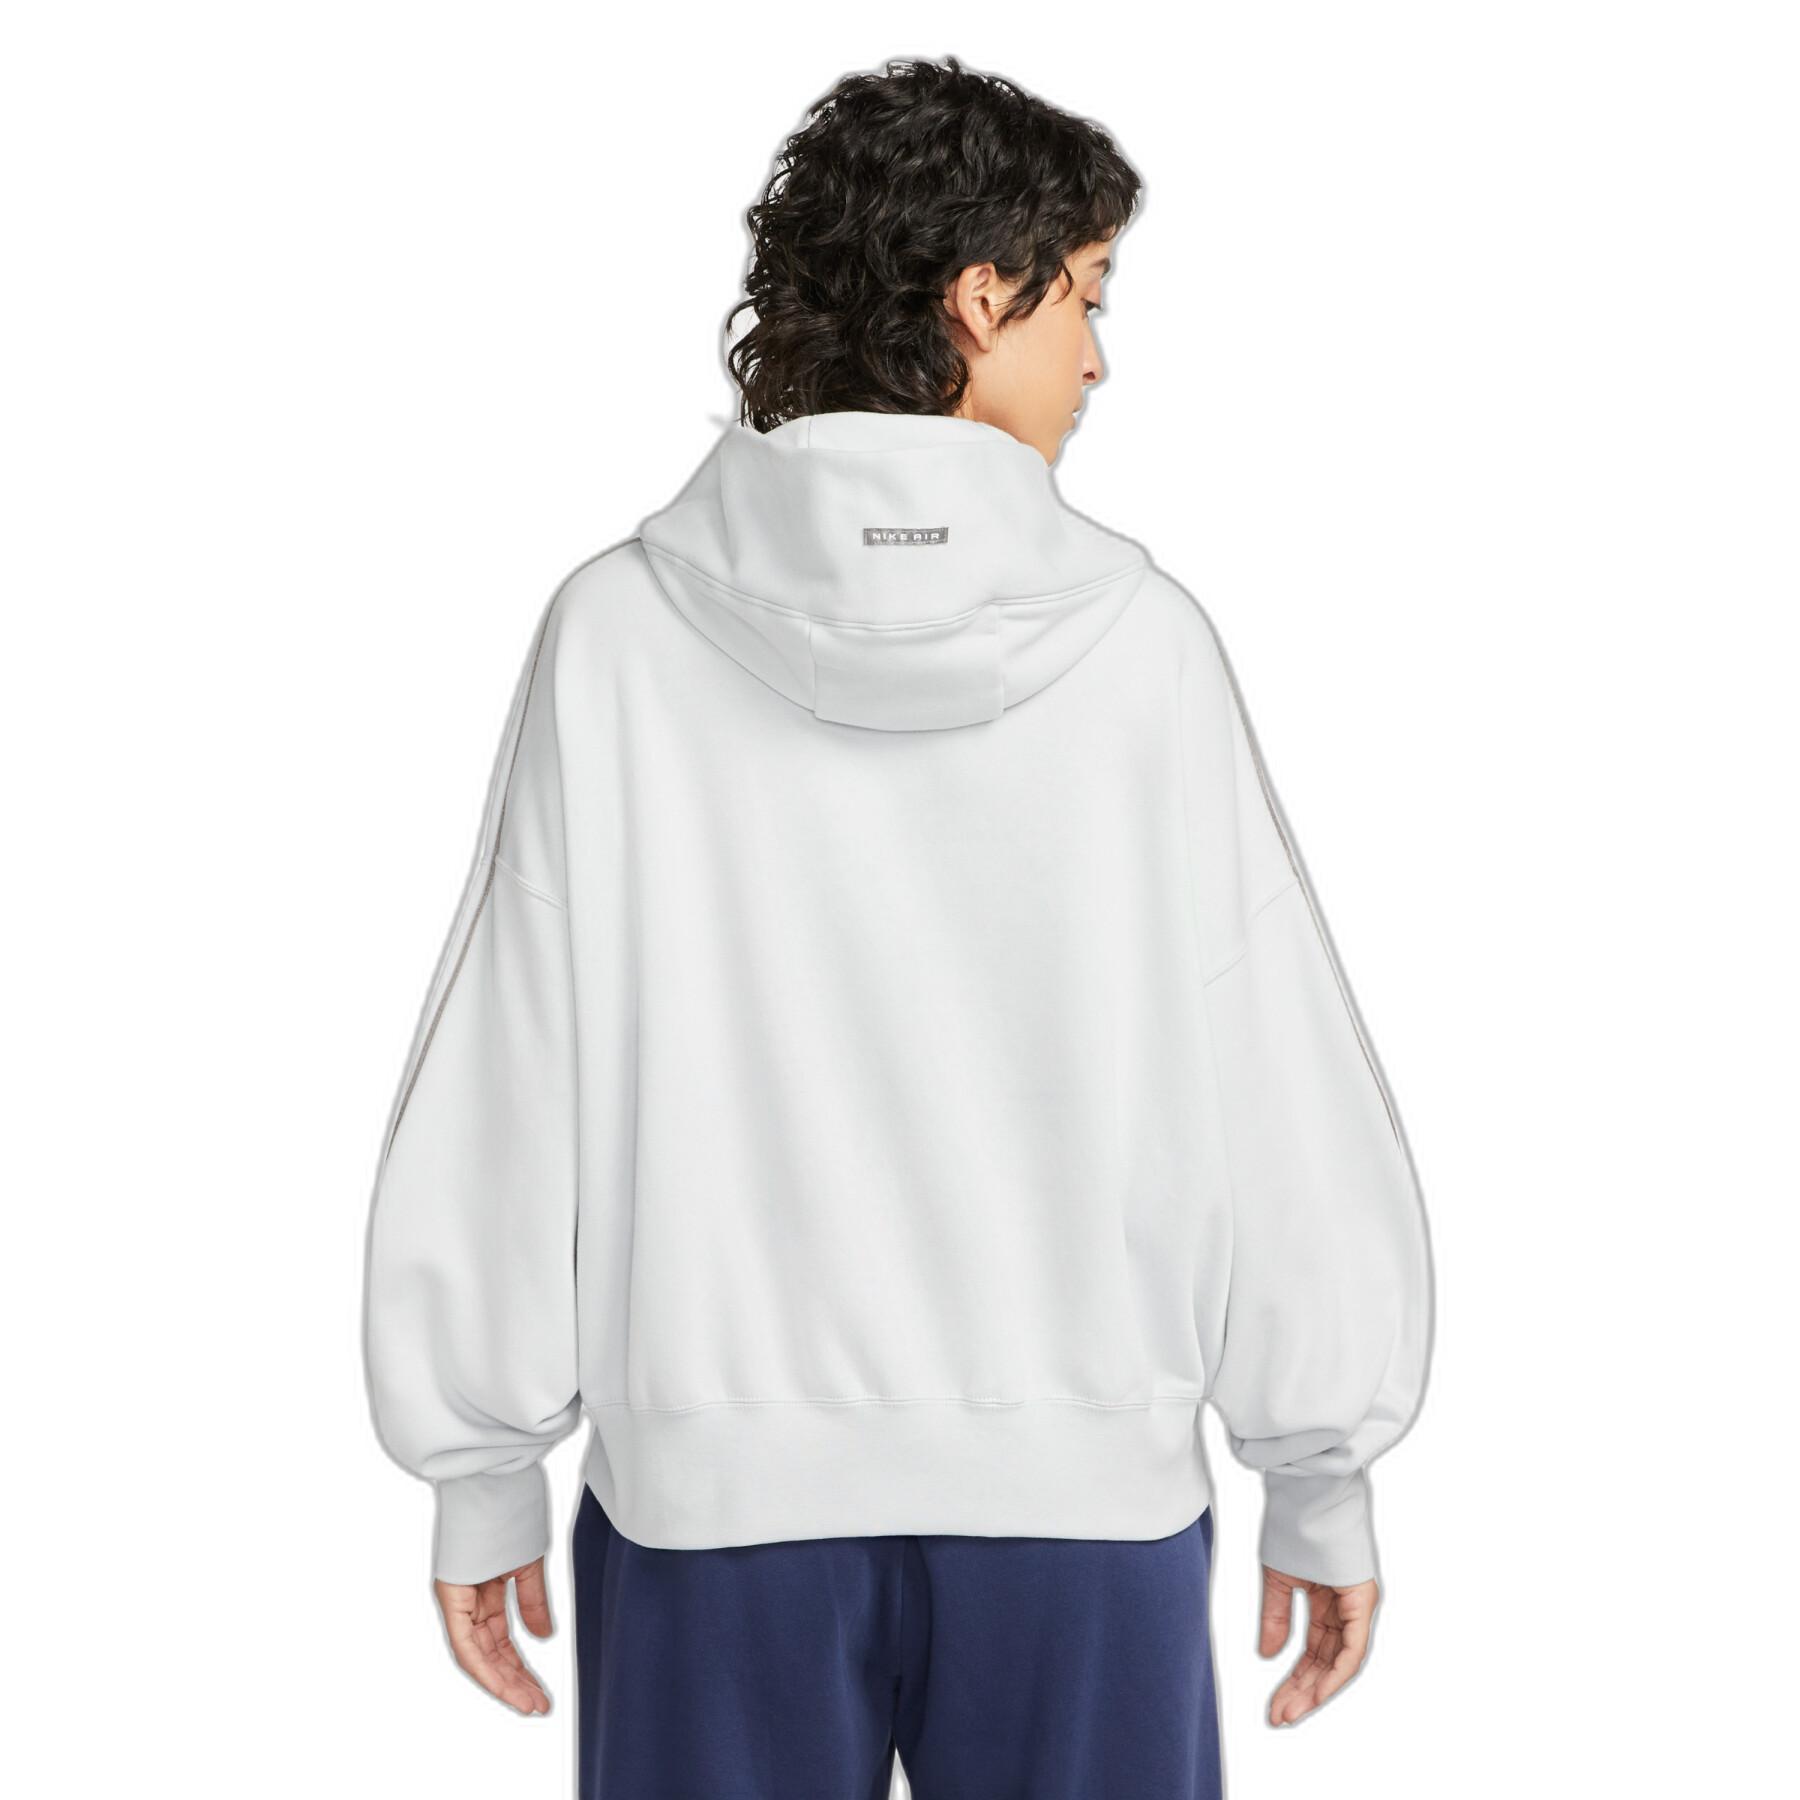 Damska bluza polarowa z kapturem Nike Sportswear Air